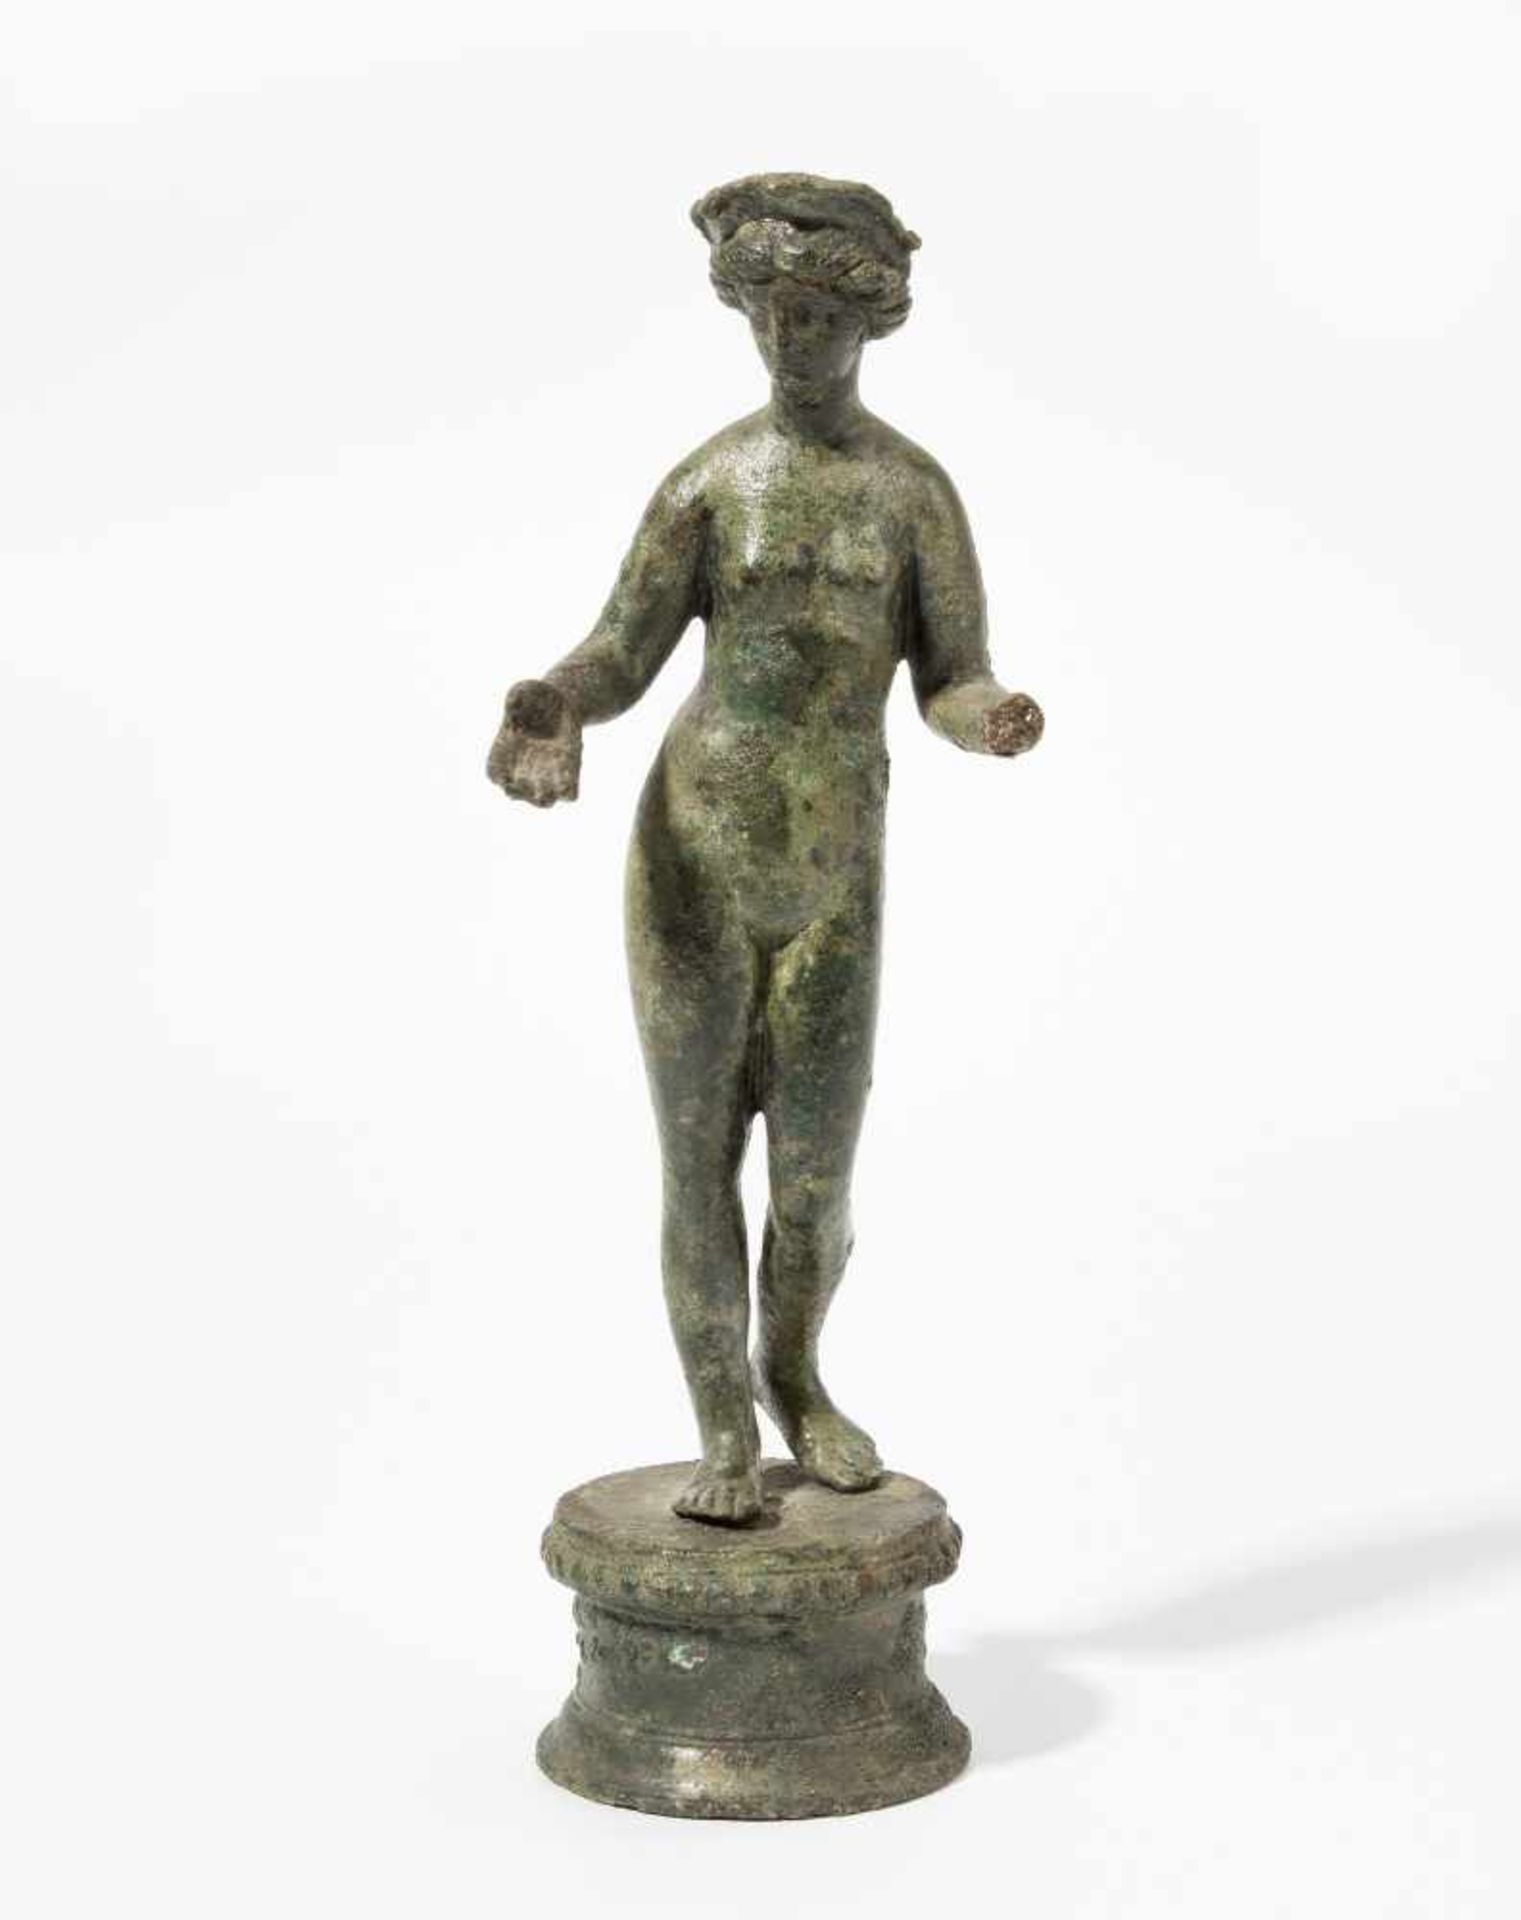 Statuette der VenusRömisch, 1.–2.Jh. n.C. Bronzevollguss. In leichtem Kontrapost stehende Venus